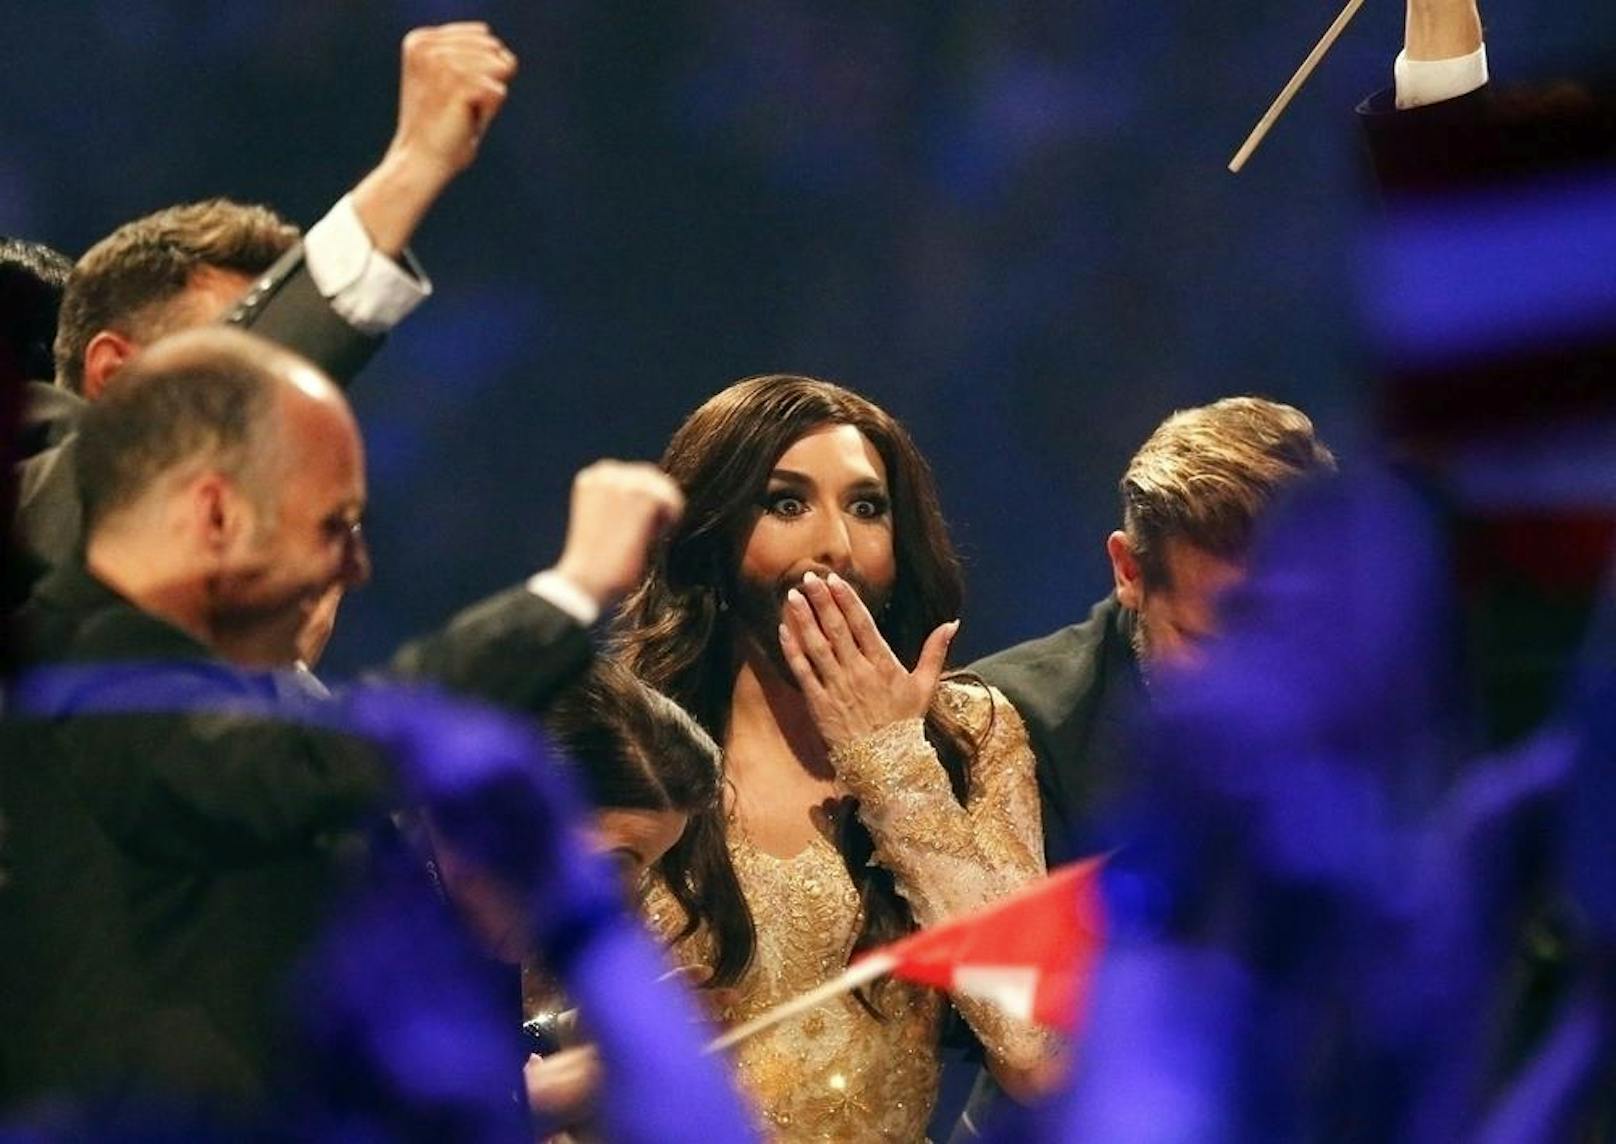 Nicht der hübscheste aller Gesichtsausdrücke, aber verständlich: Conchita gewinnt den Song Contest.